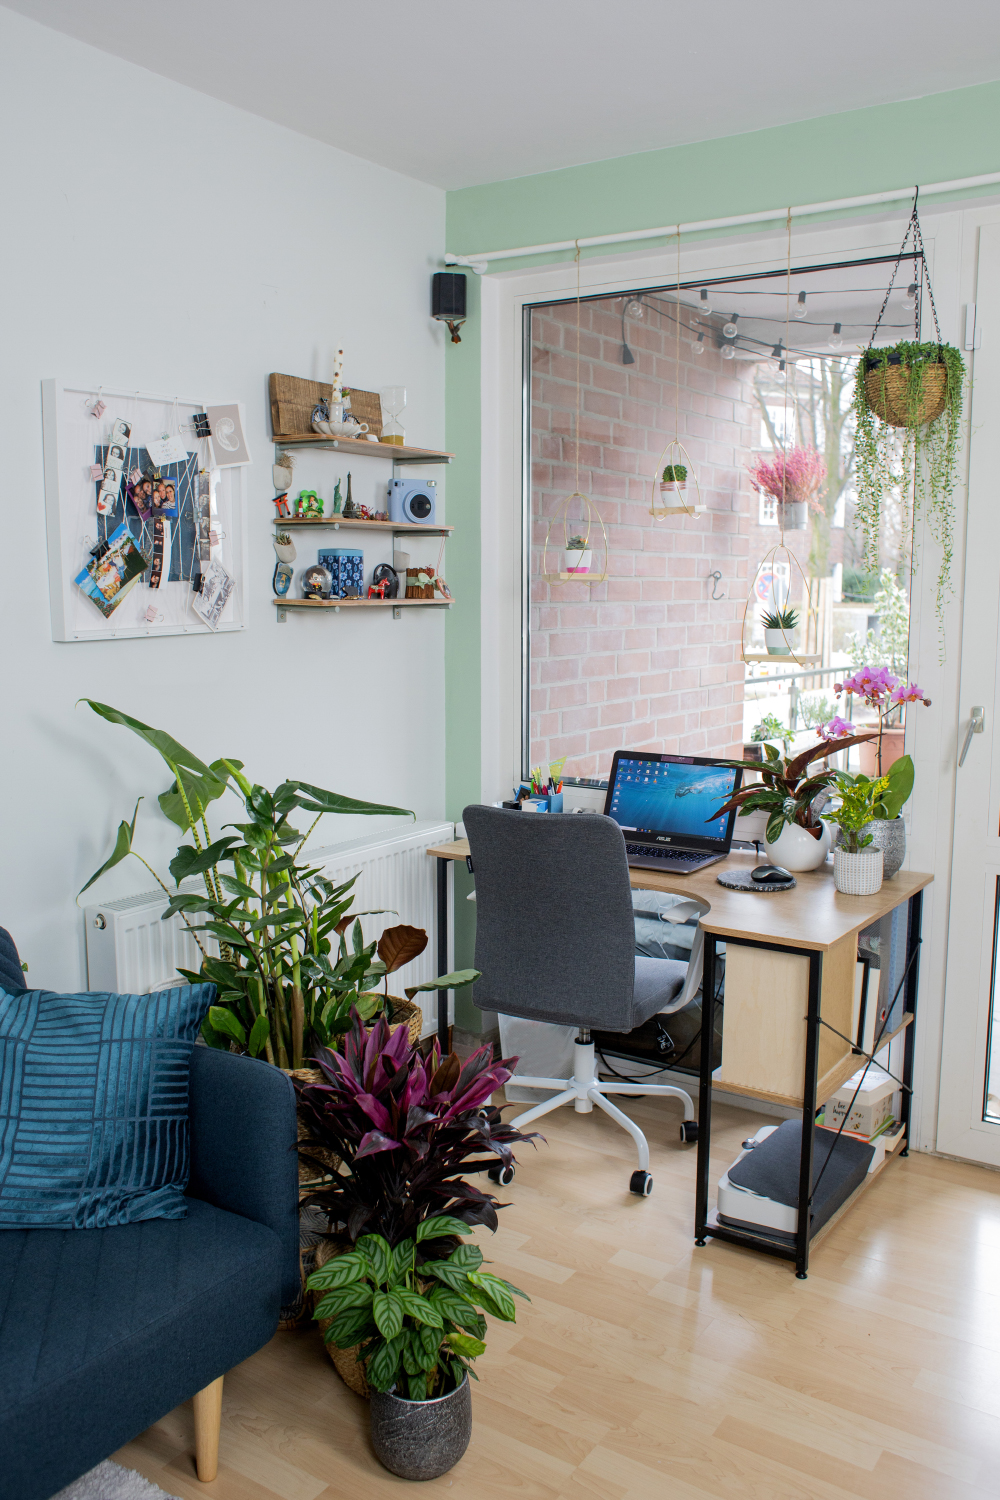 xxl pflanzen makeover wohnzimmer / home office + diy für